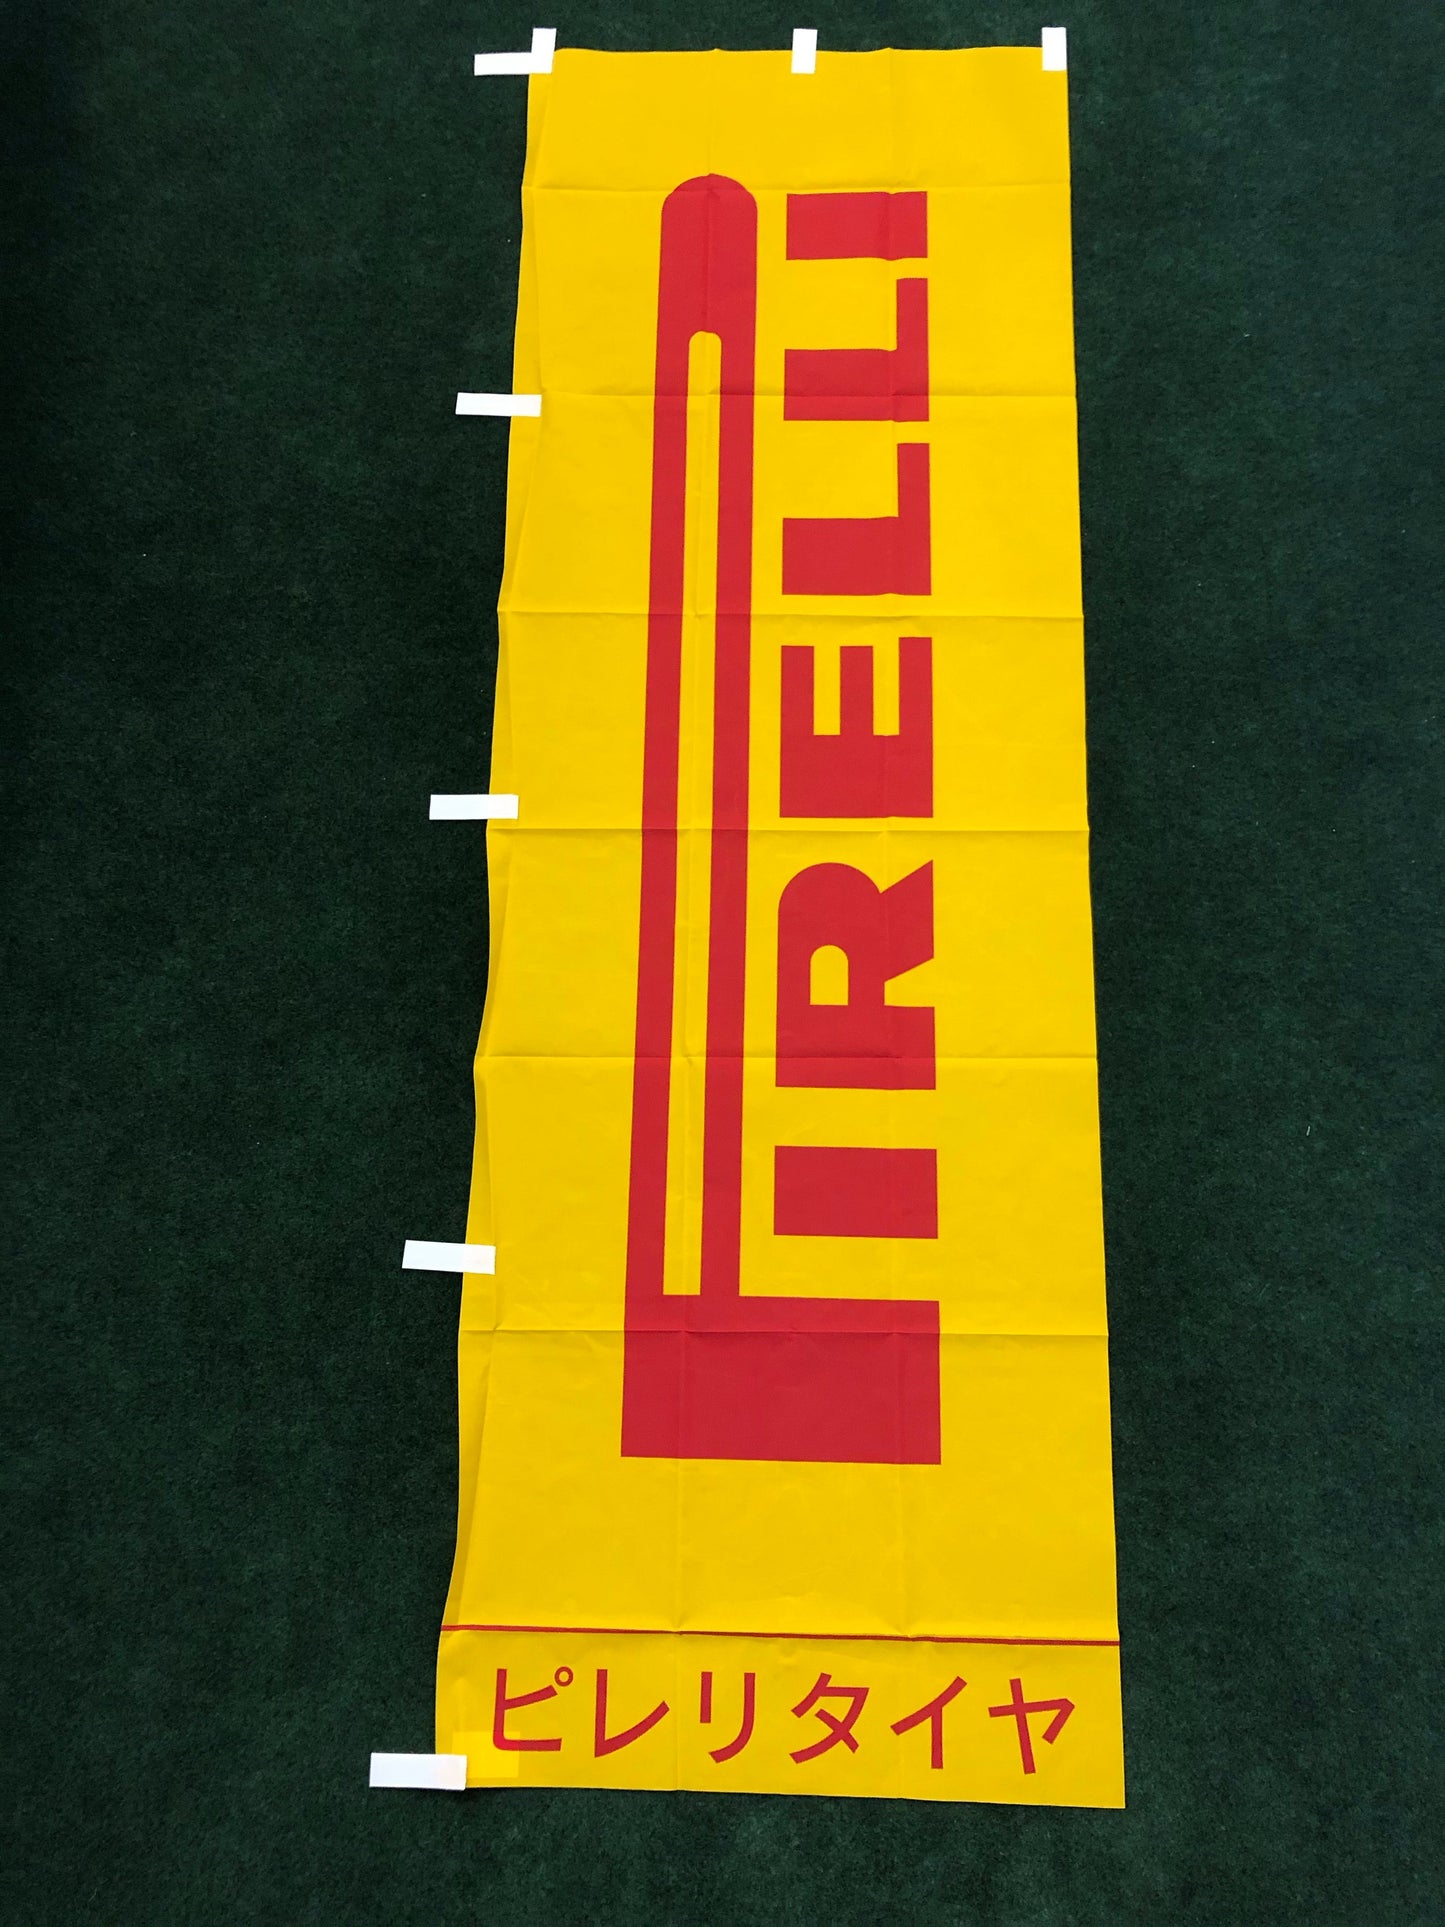 Pirelli Tires Nobori Banner